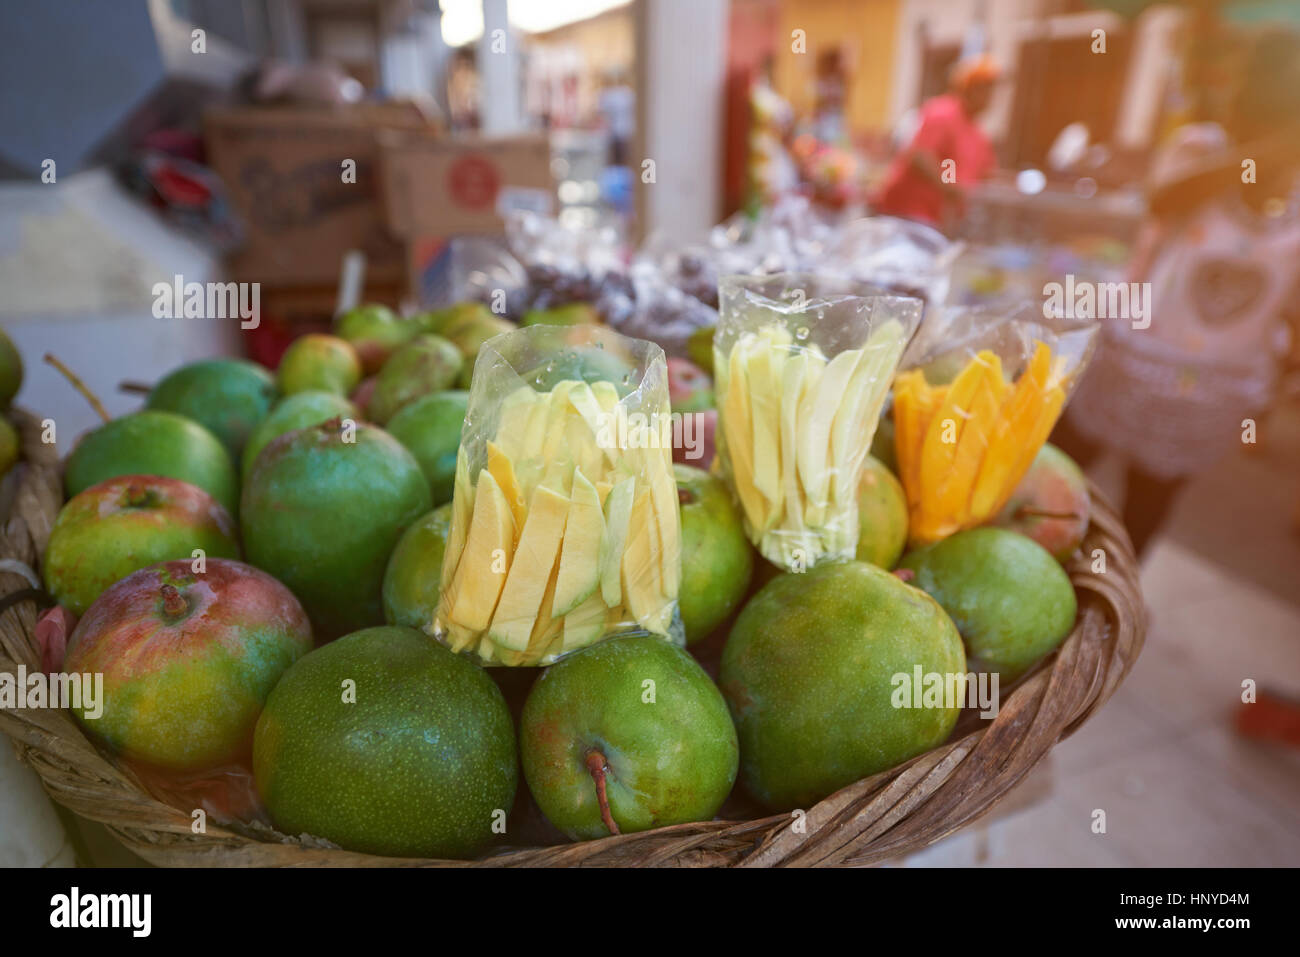 Früchte zum verkaufen in Straßenmarkt in Lateinamerika Stockfoto